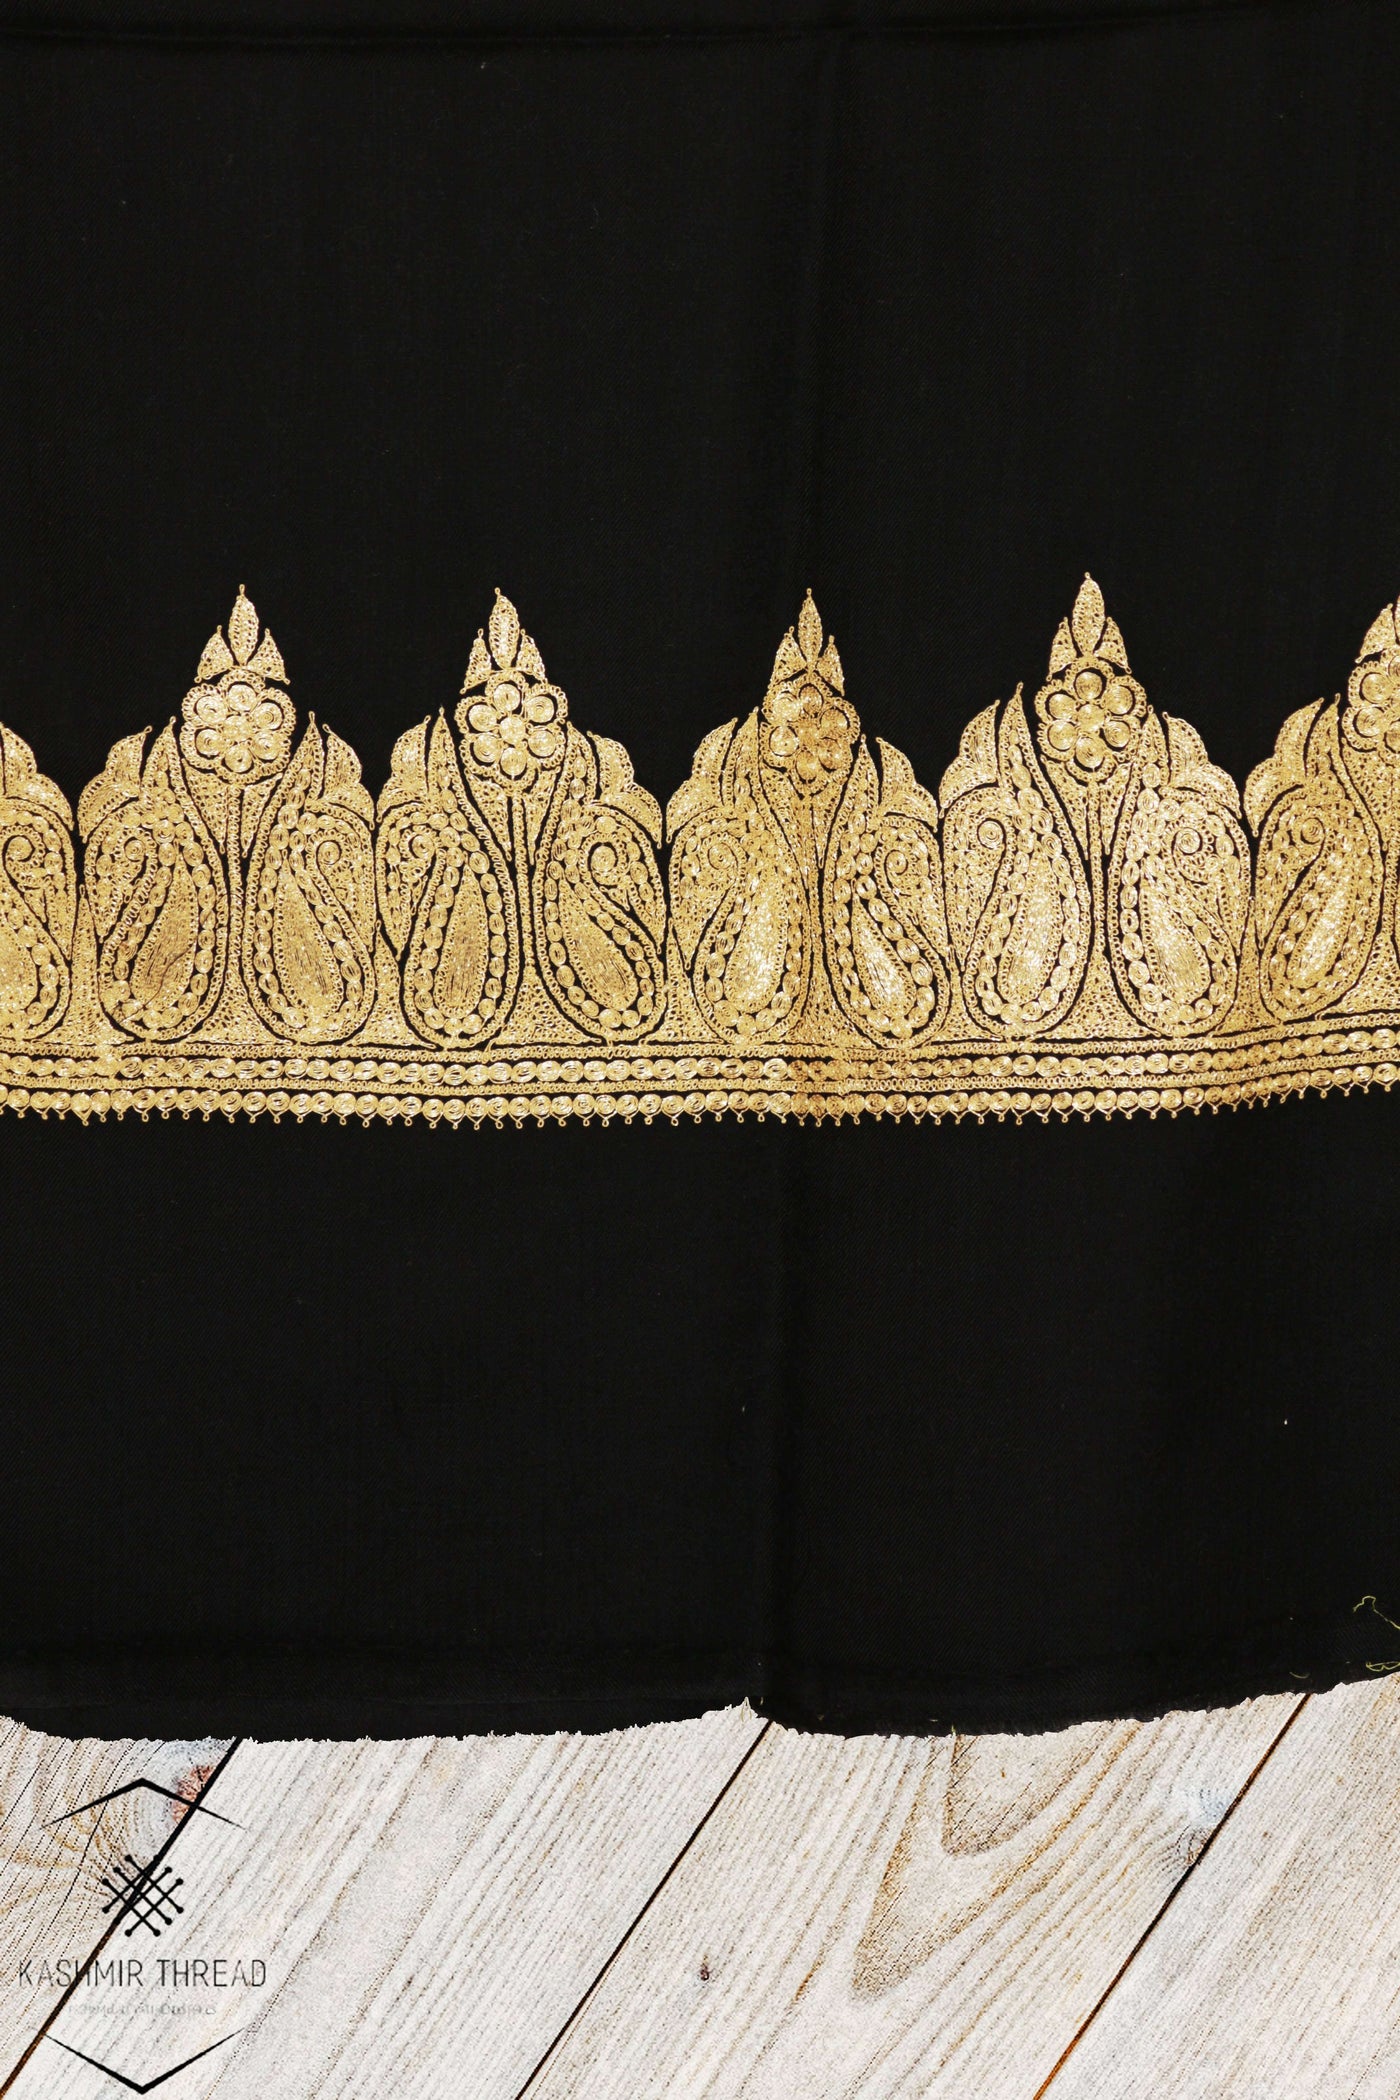 Kashmir Thread shawl Black Kashmiri Shawl Tilla Embroidery